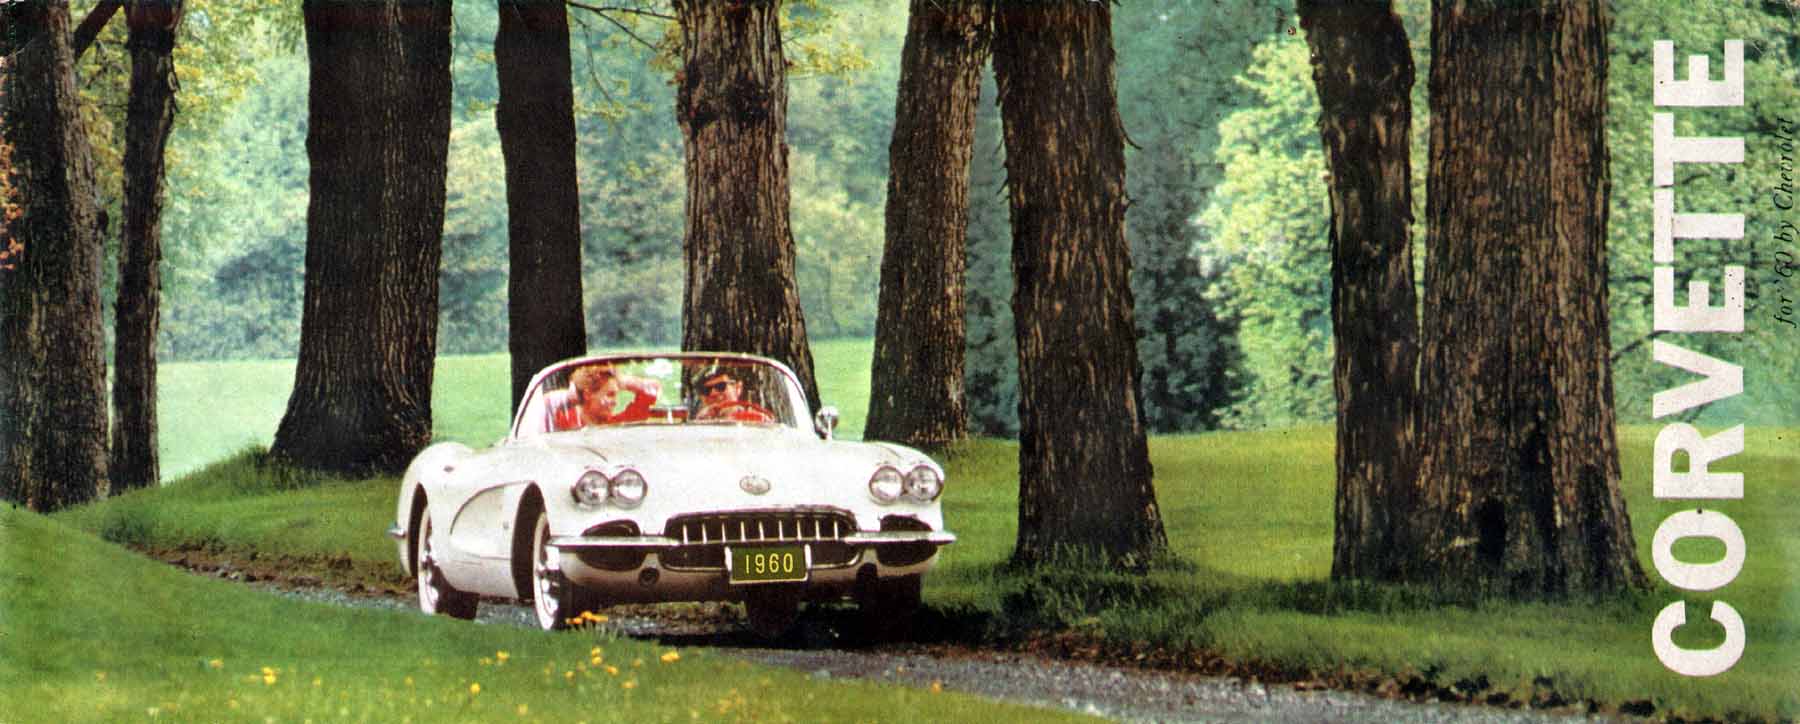 1960 Chevrolet Corvette-01